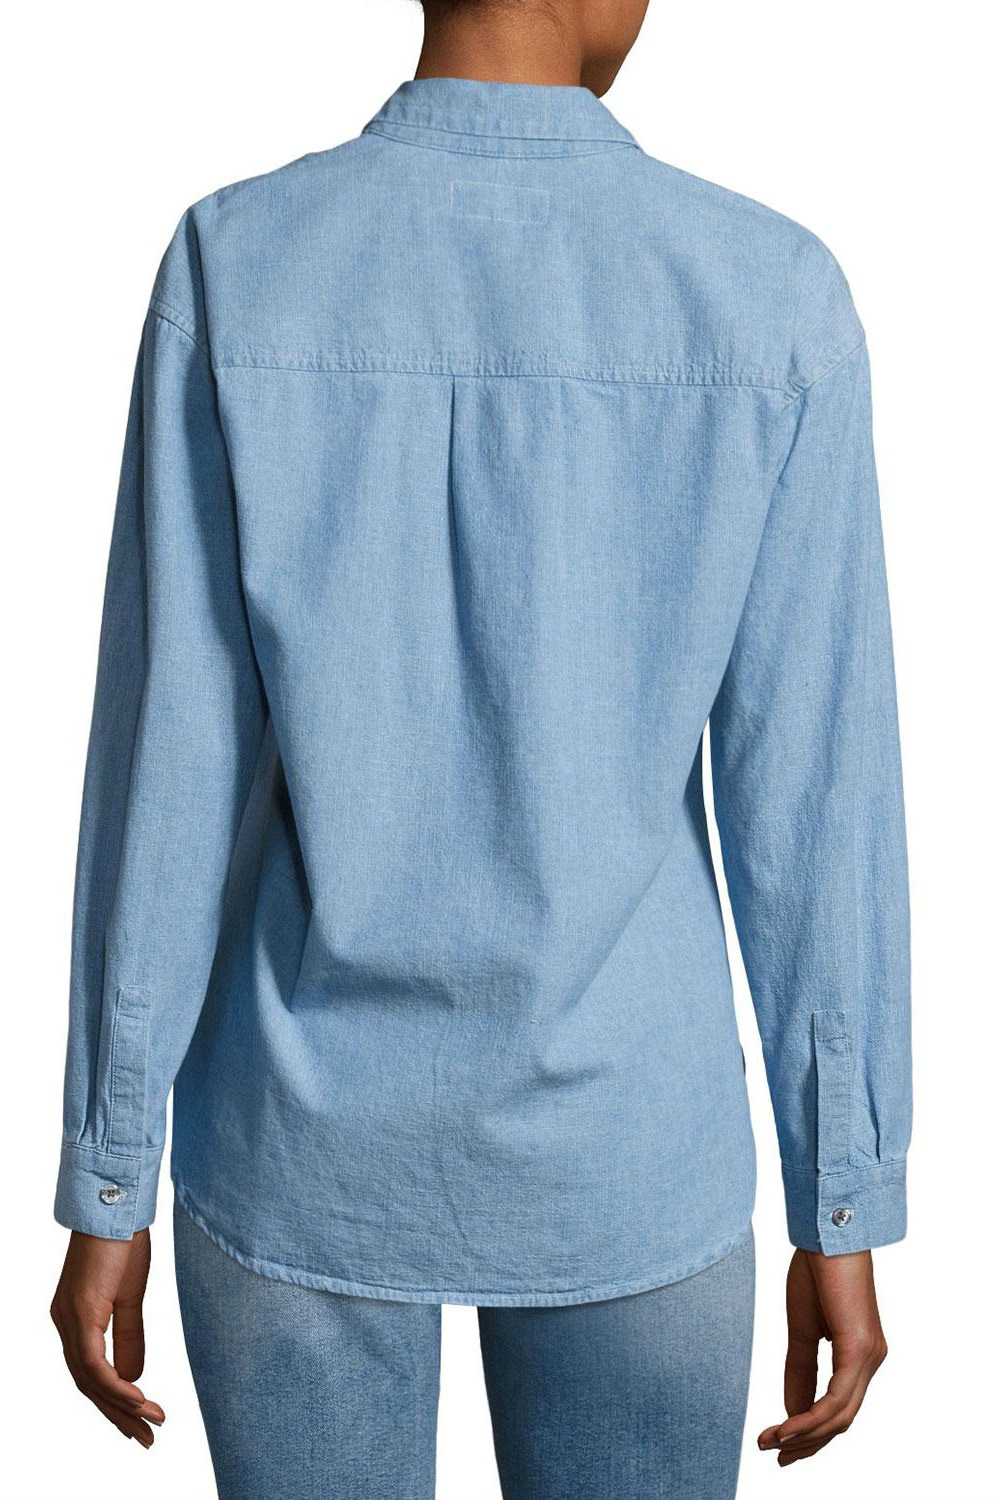 Рубашка Derek Lam 10 Crosby, размер М (рос 46/46+)